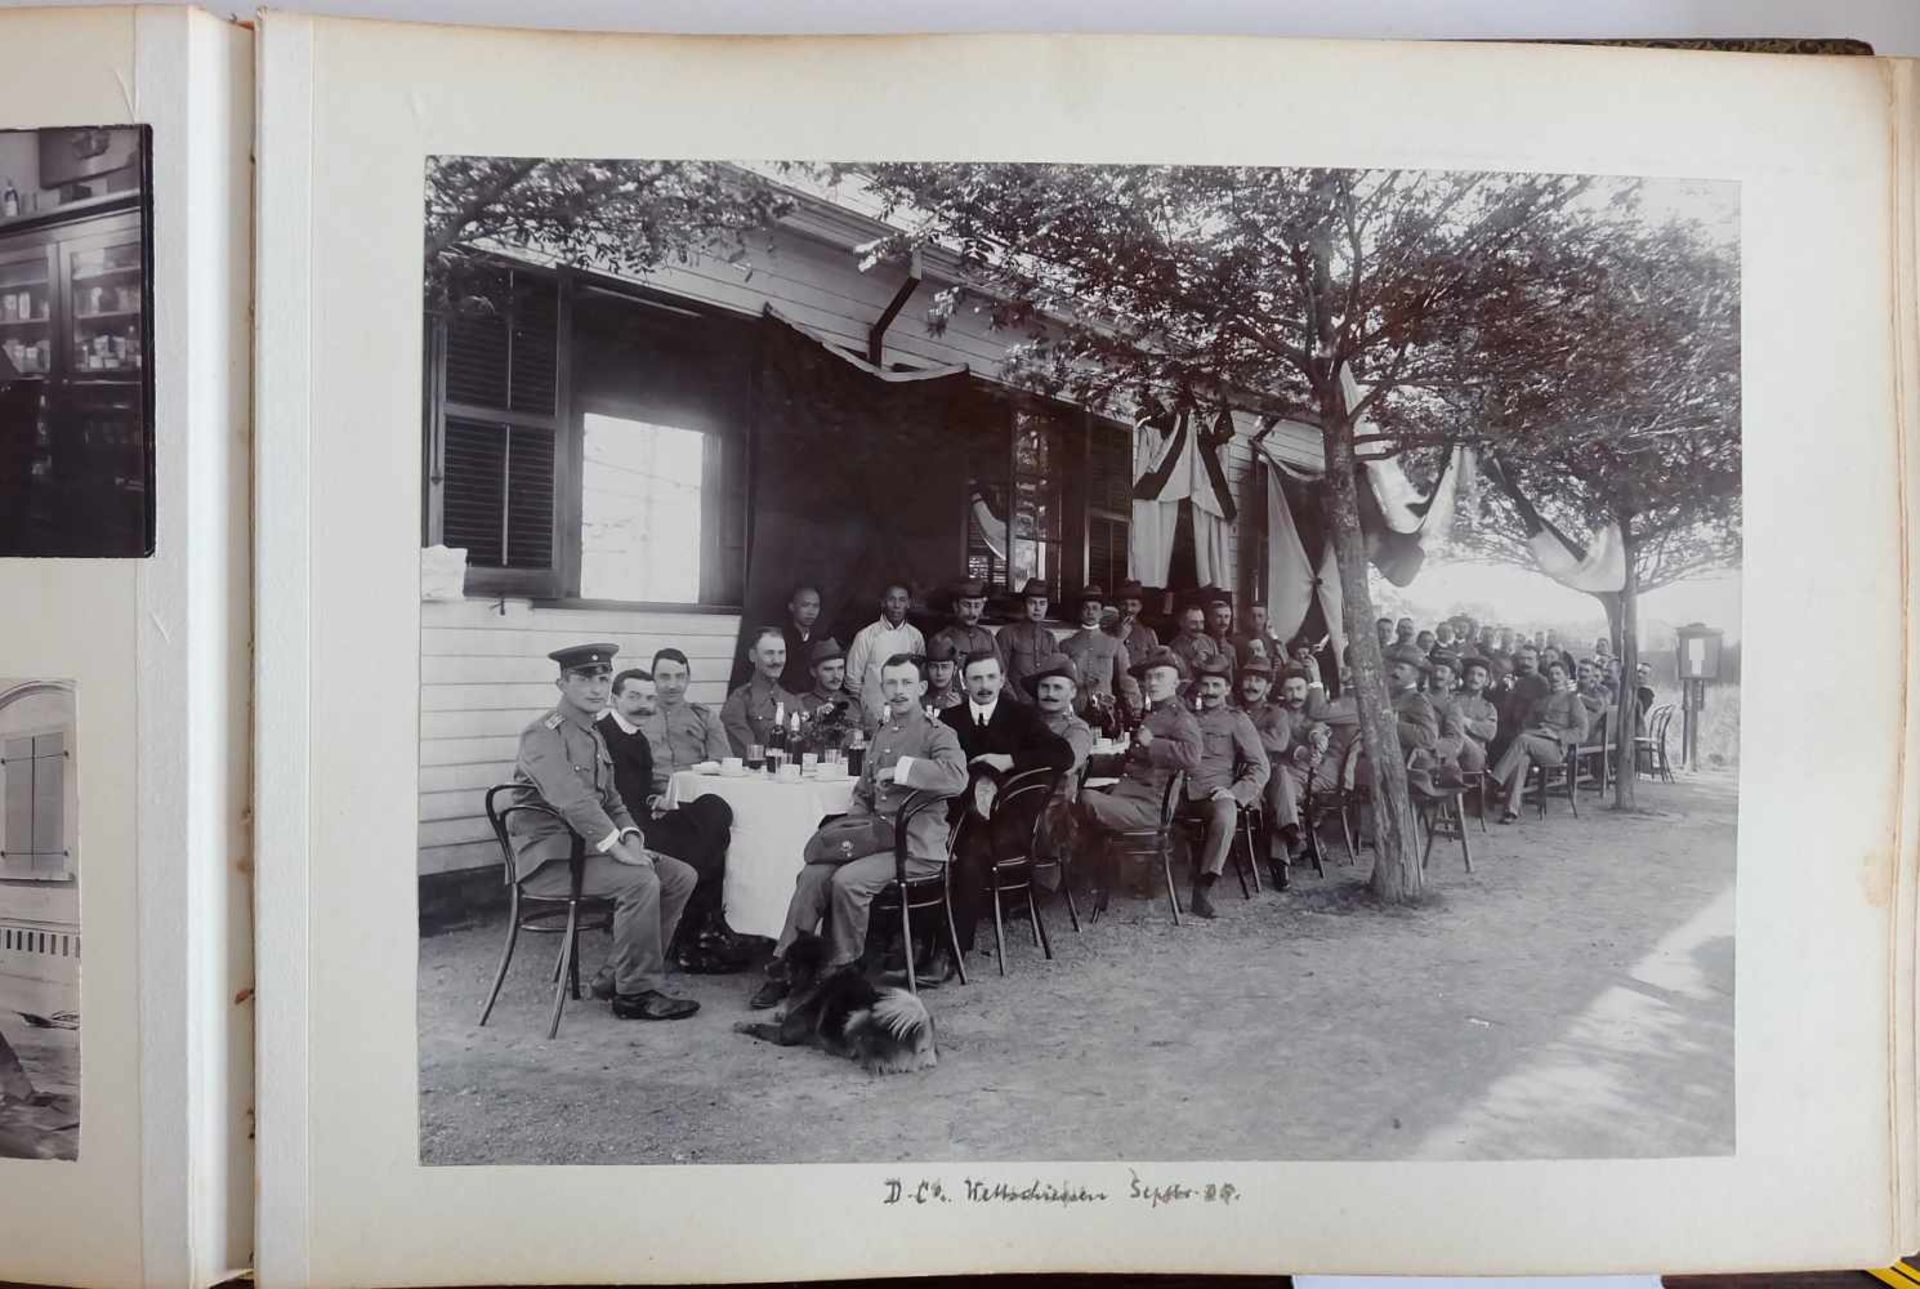 DEUTSCHES REICH, 2 Fotoalben, Shanghai, um 1900, Fotos des Militär- und Freizeitlebens eines - Image 6 of 7